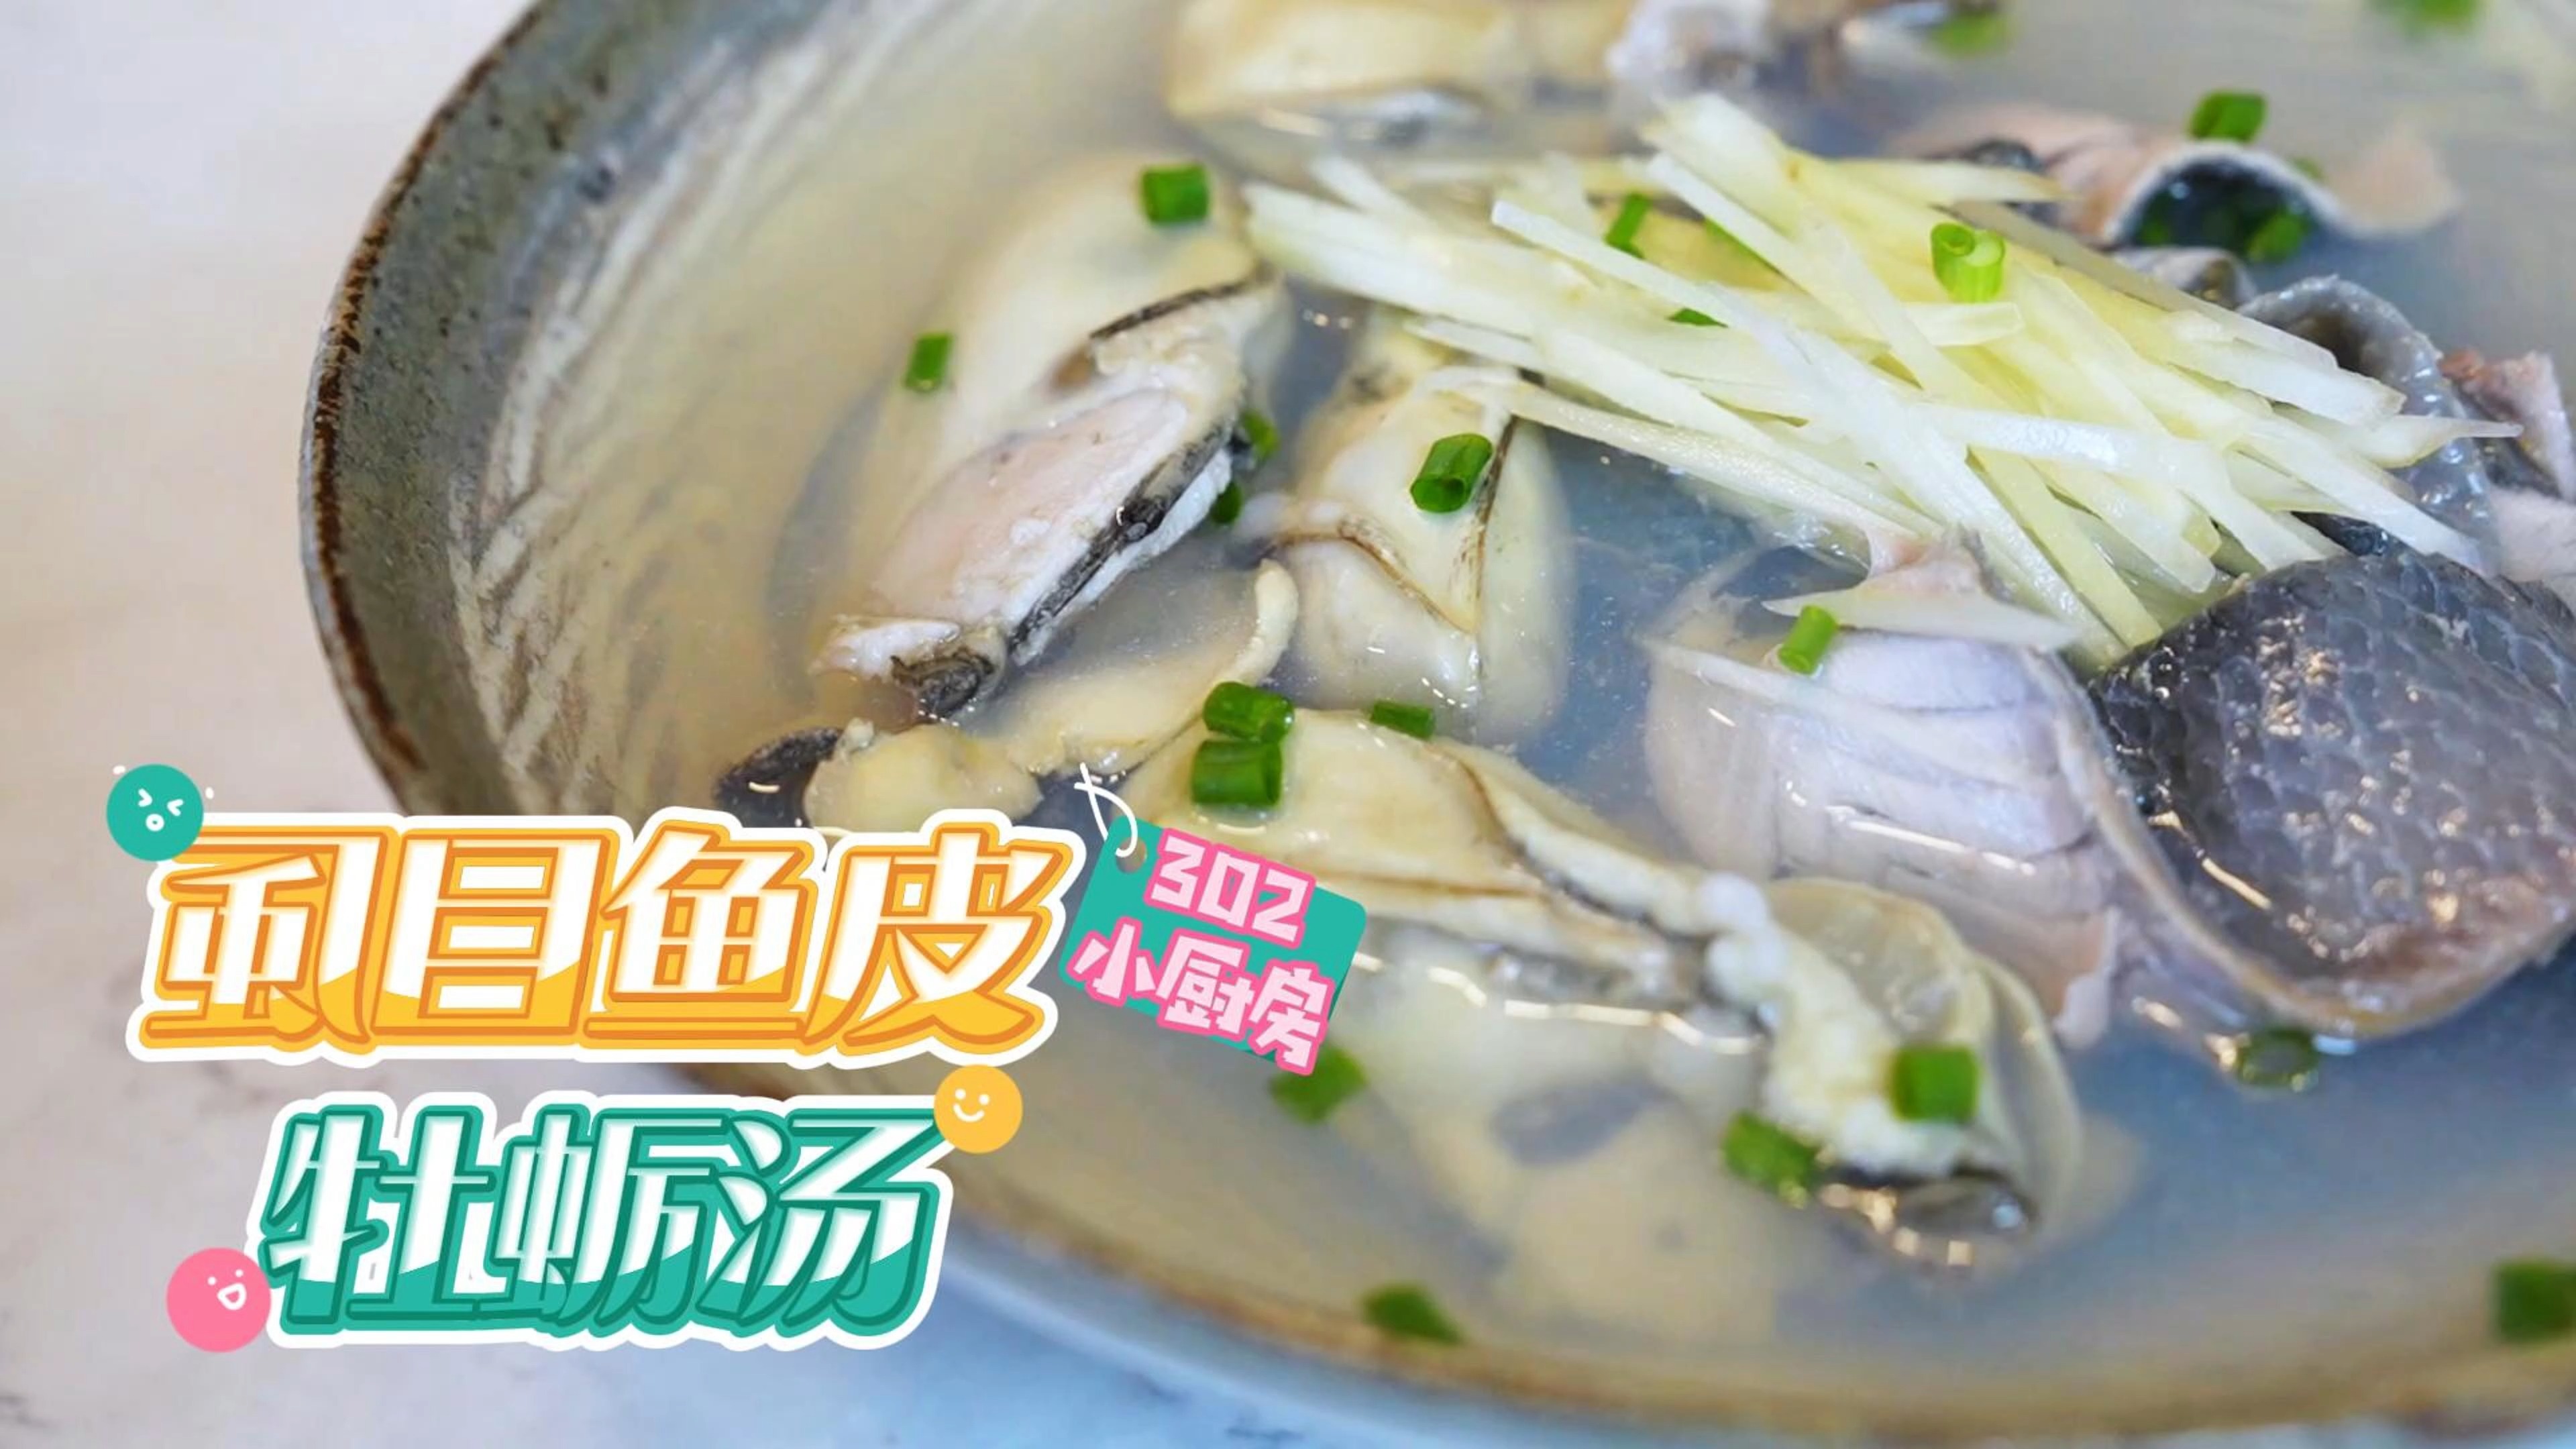 虱目鱼皮牡蛎汤*视频 <302小厨房>